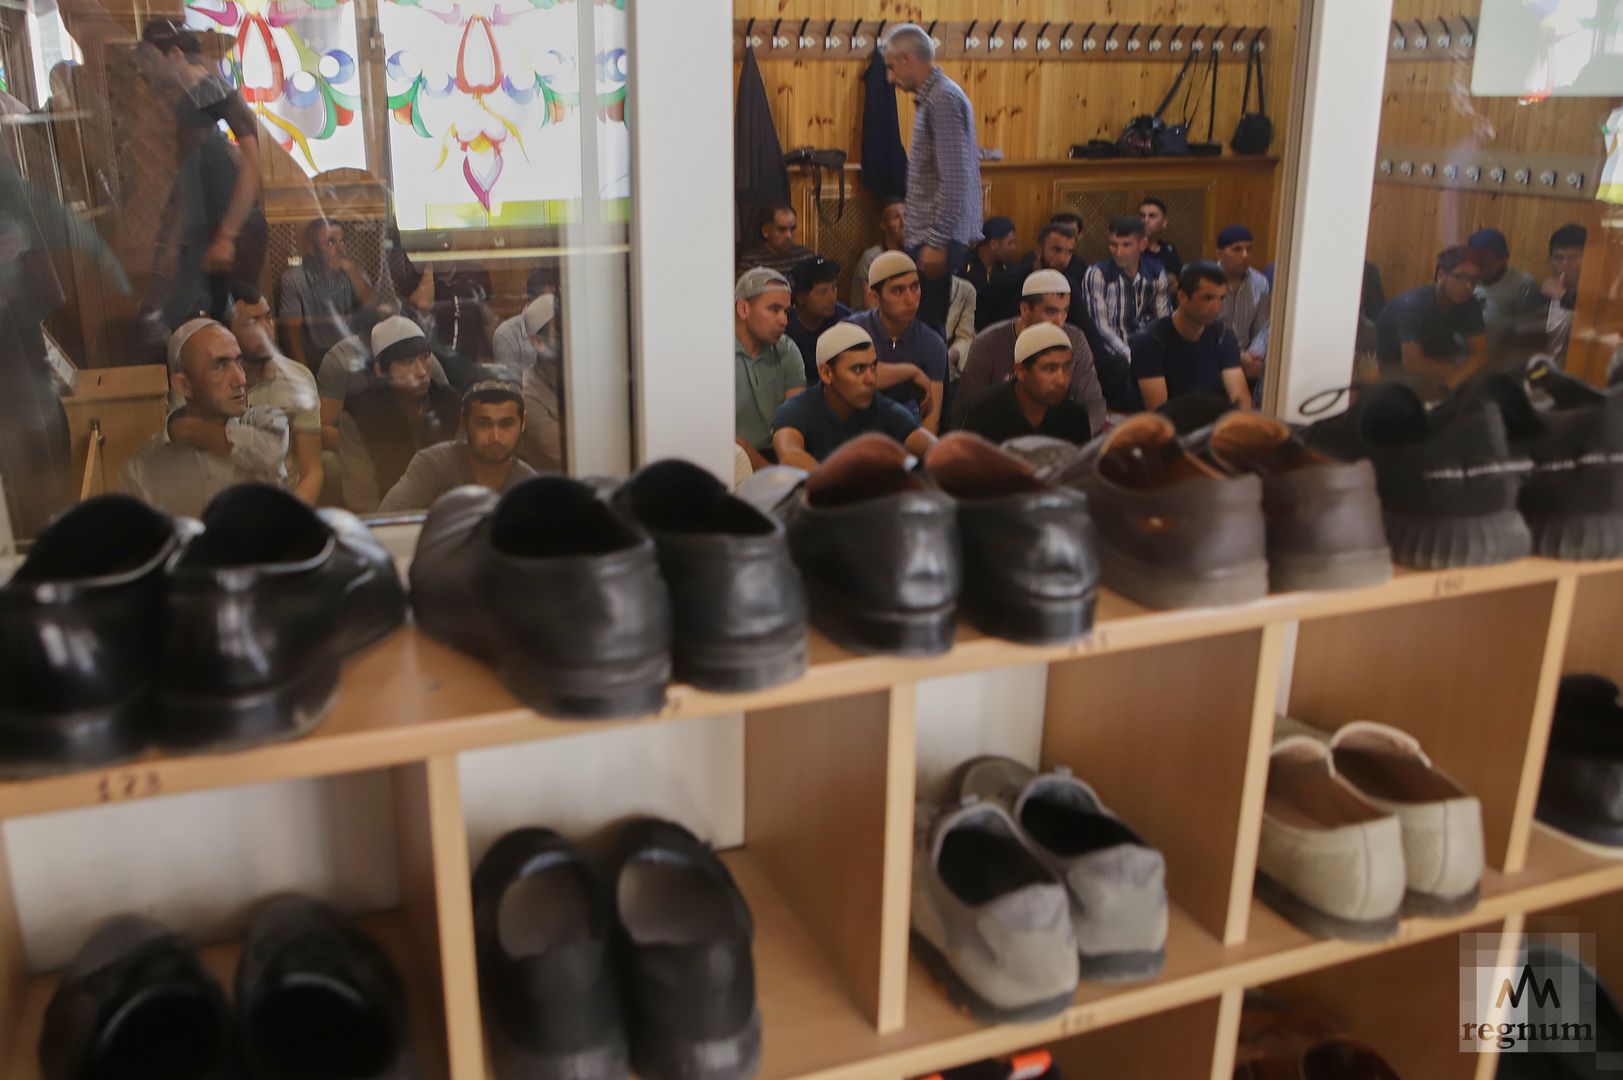 При входе в мечеть прихожане снимают обувь